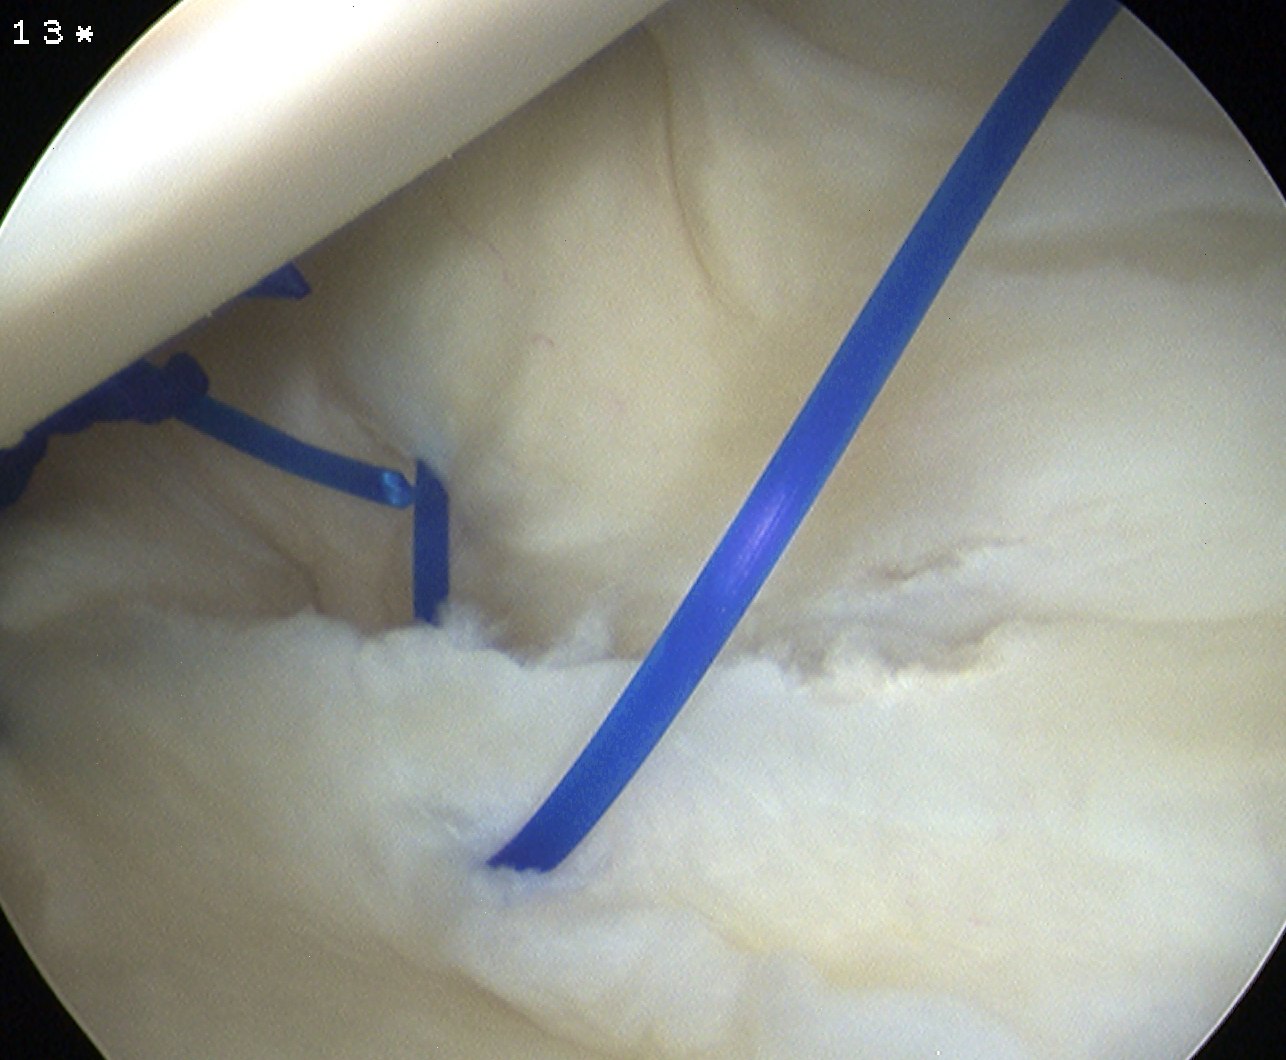 MDI 2 bites anterior capsule